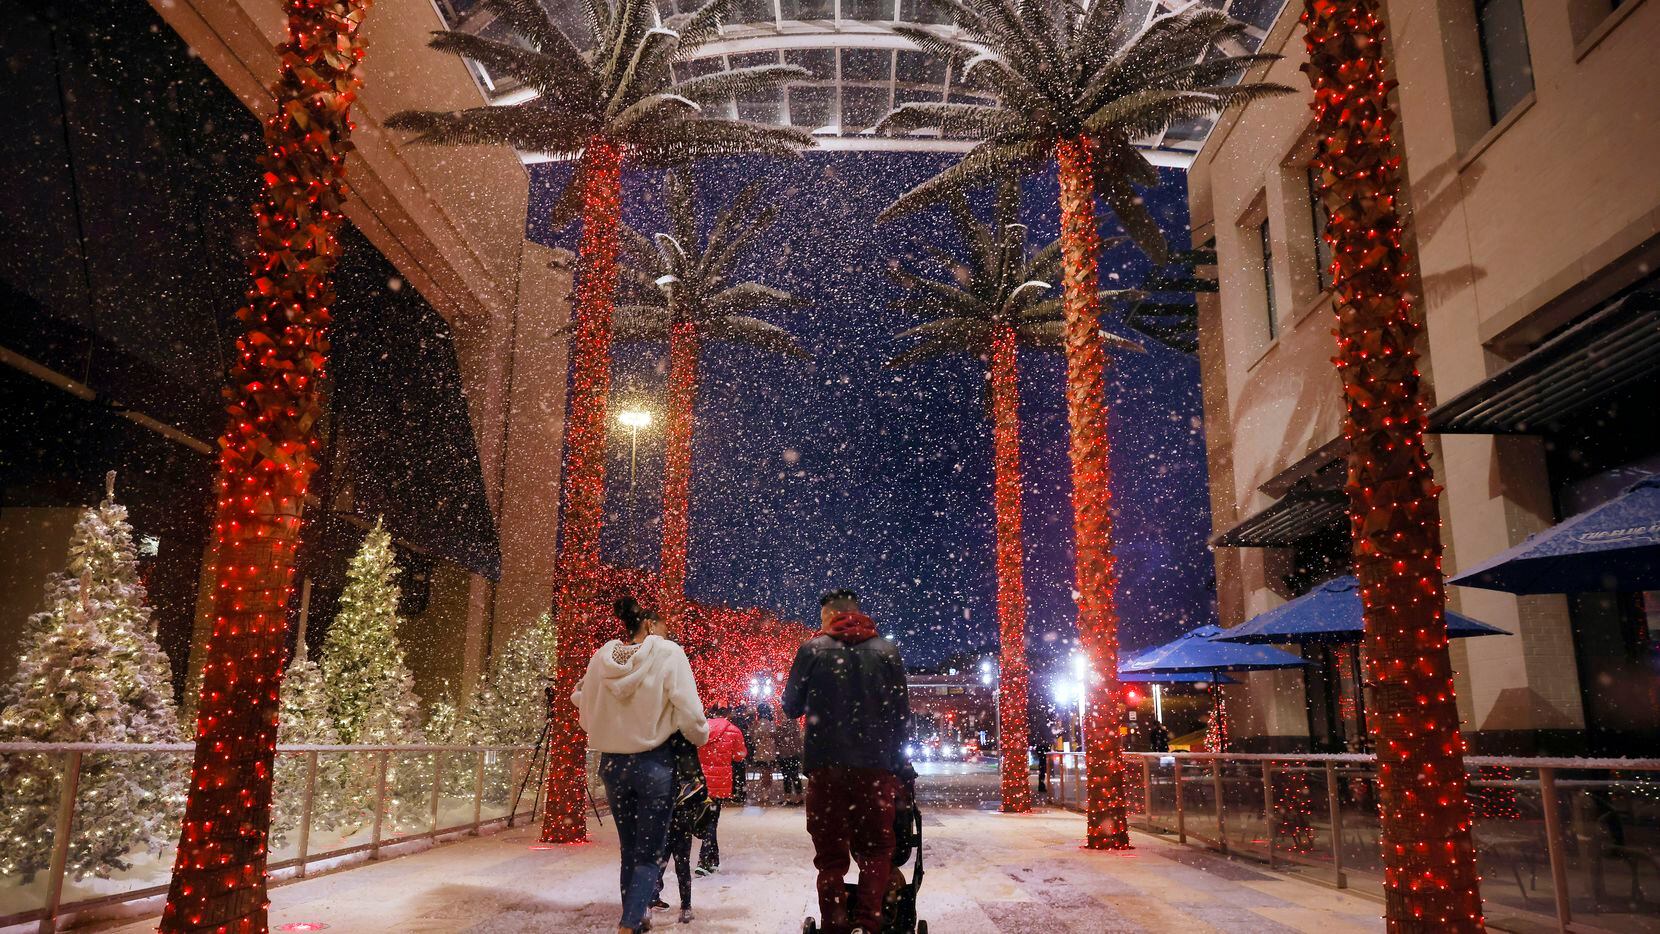 Cae ‘nieve’ en la entrada principal del mall Galleria Dallas en esta